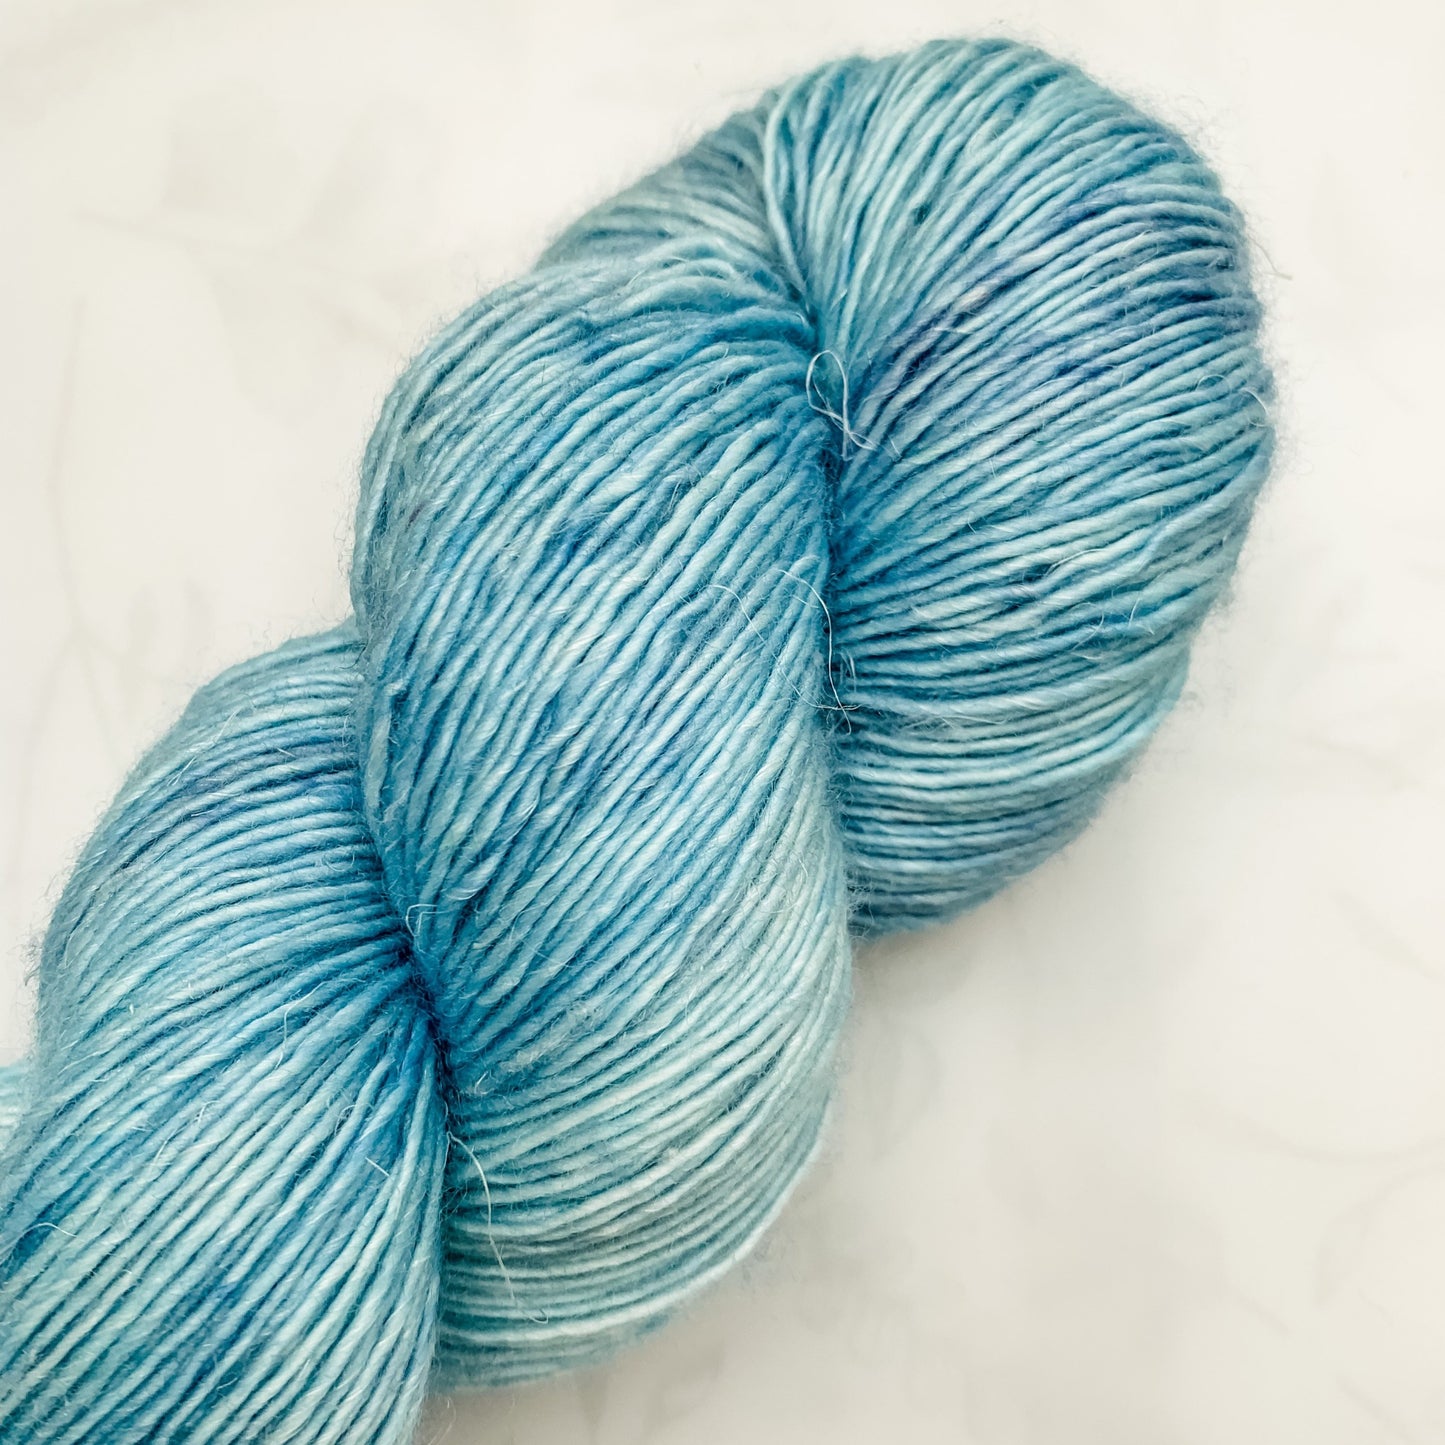 Plateau - Lysefjord Single - Tonal Yarn - Hand dyed yarn